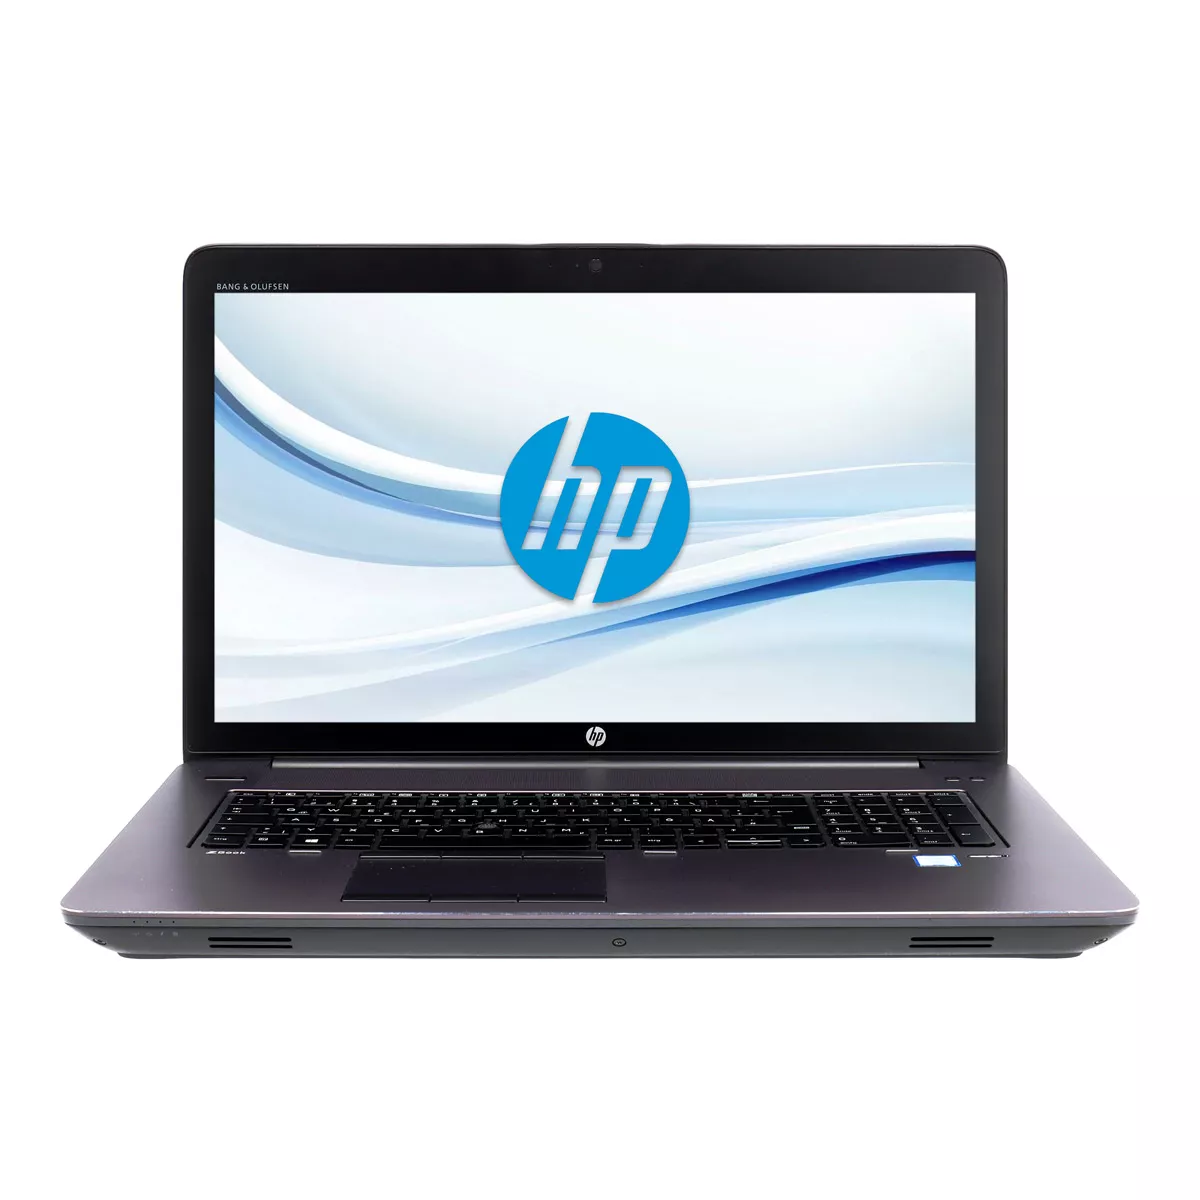 HP ZBook 17 G3 Core i7 6820HQ nVidia Quadro M3000M 4,0 GB Full-HD 240 GB M.2 SSD Webcam A+